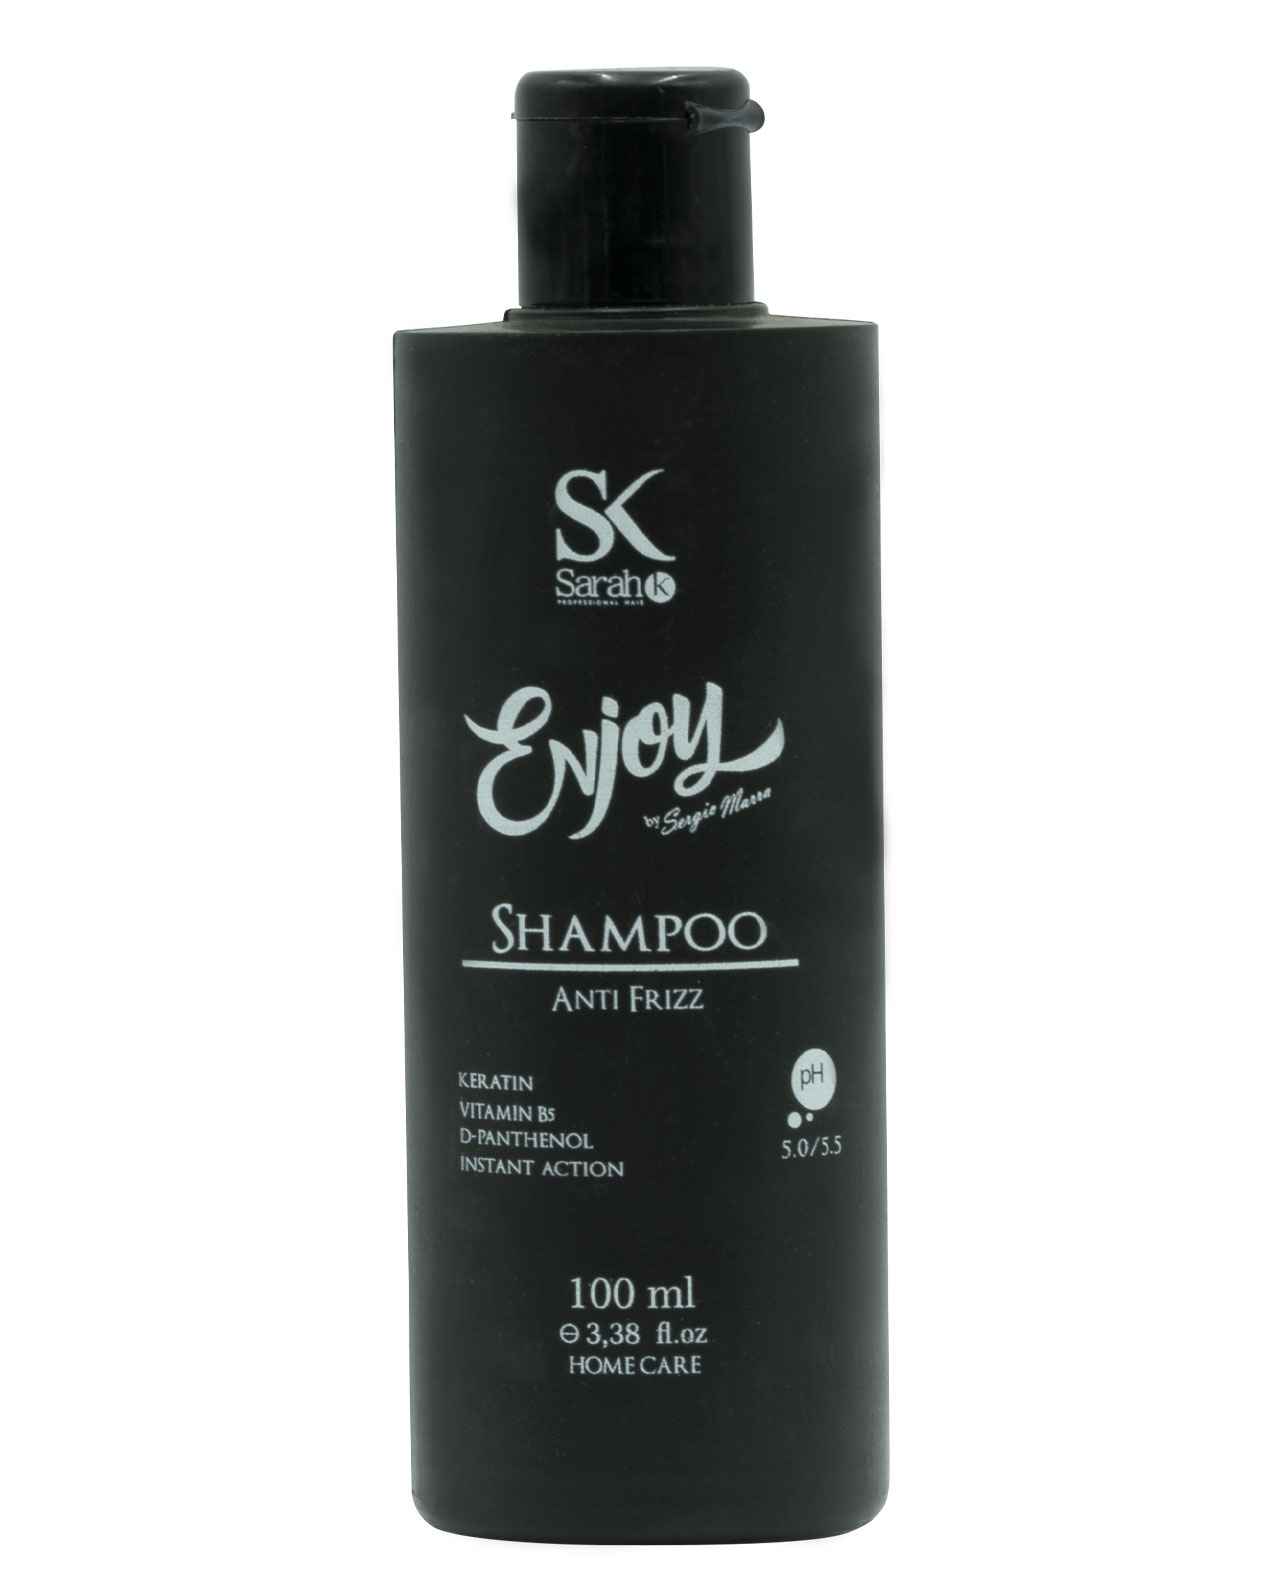 enjoy_shampoo_100ml